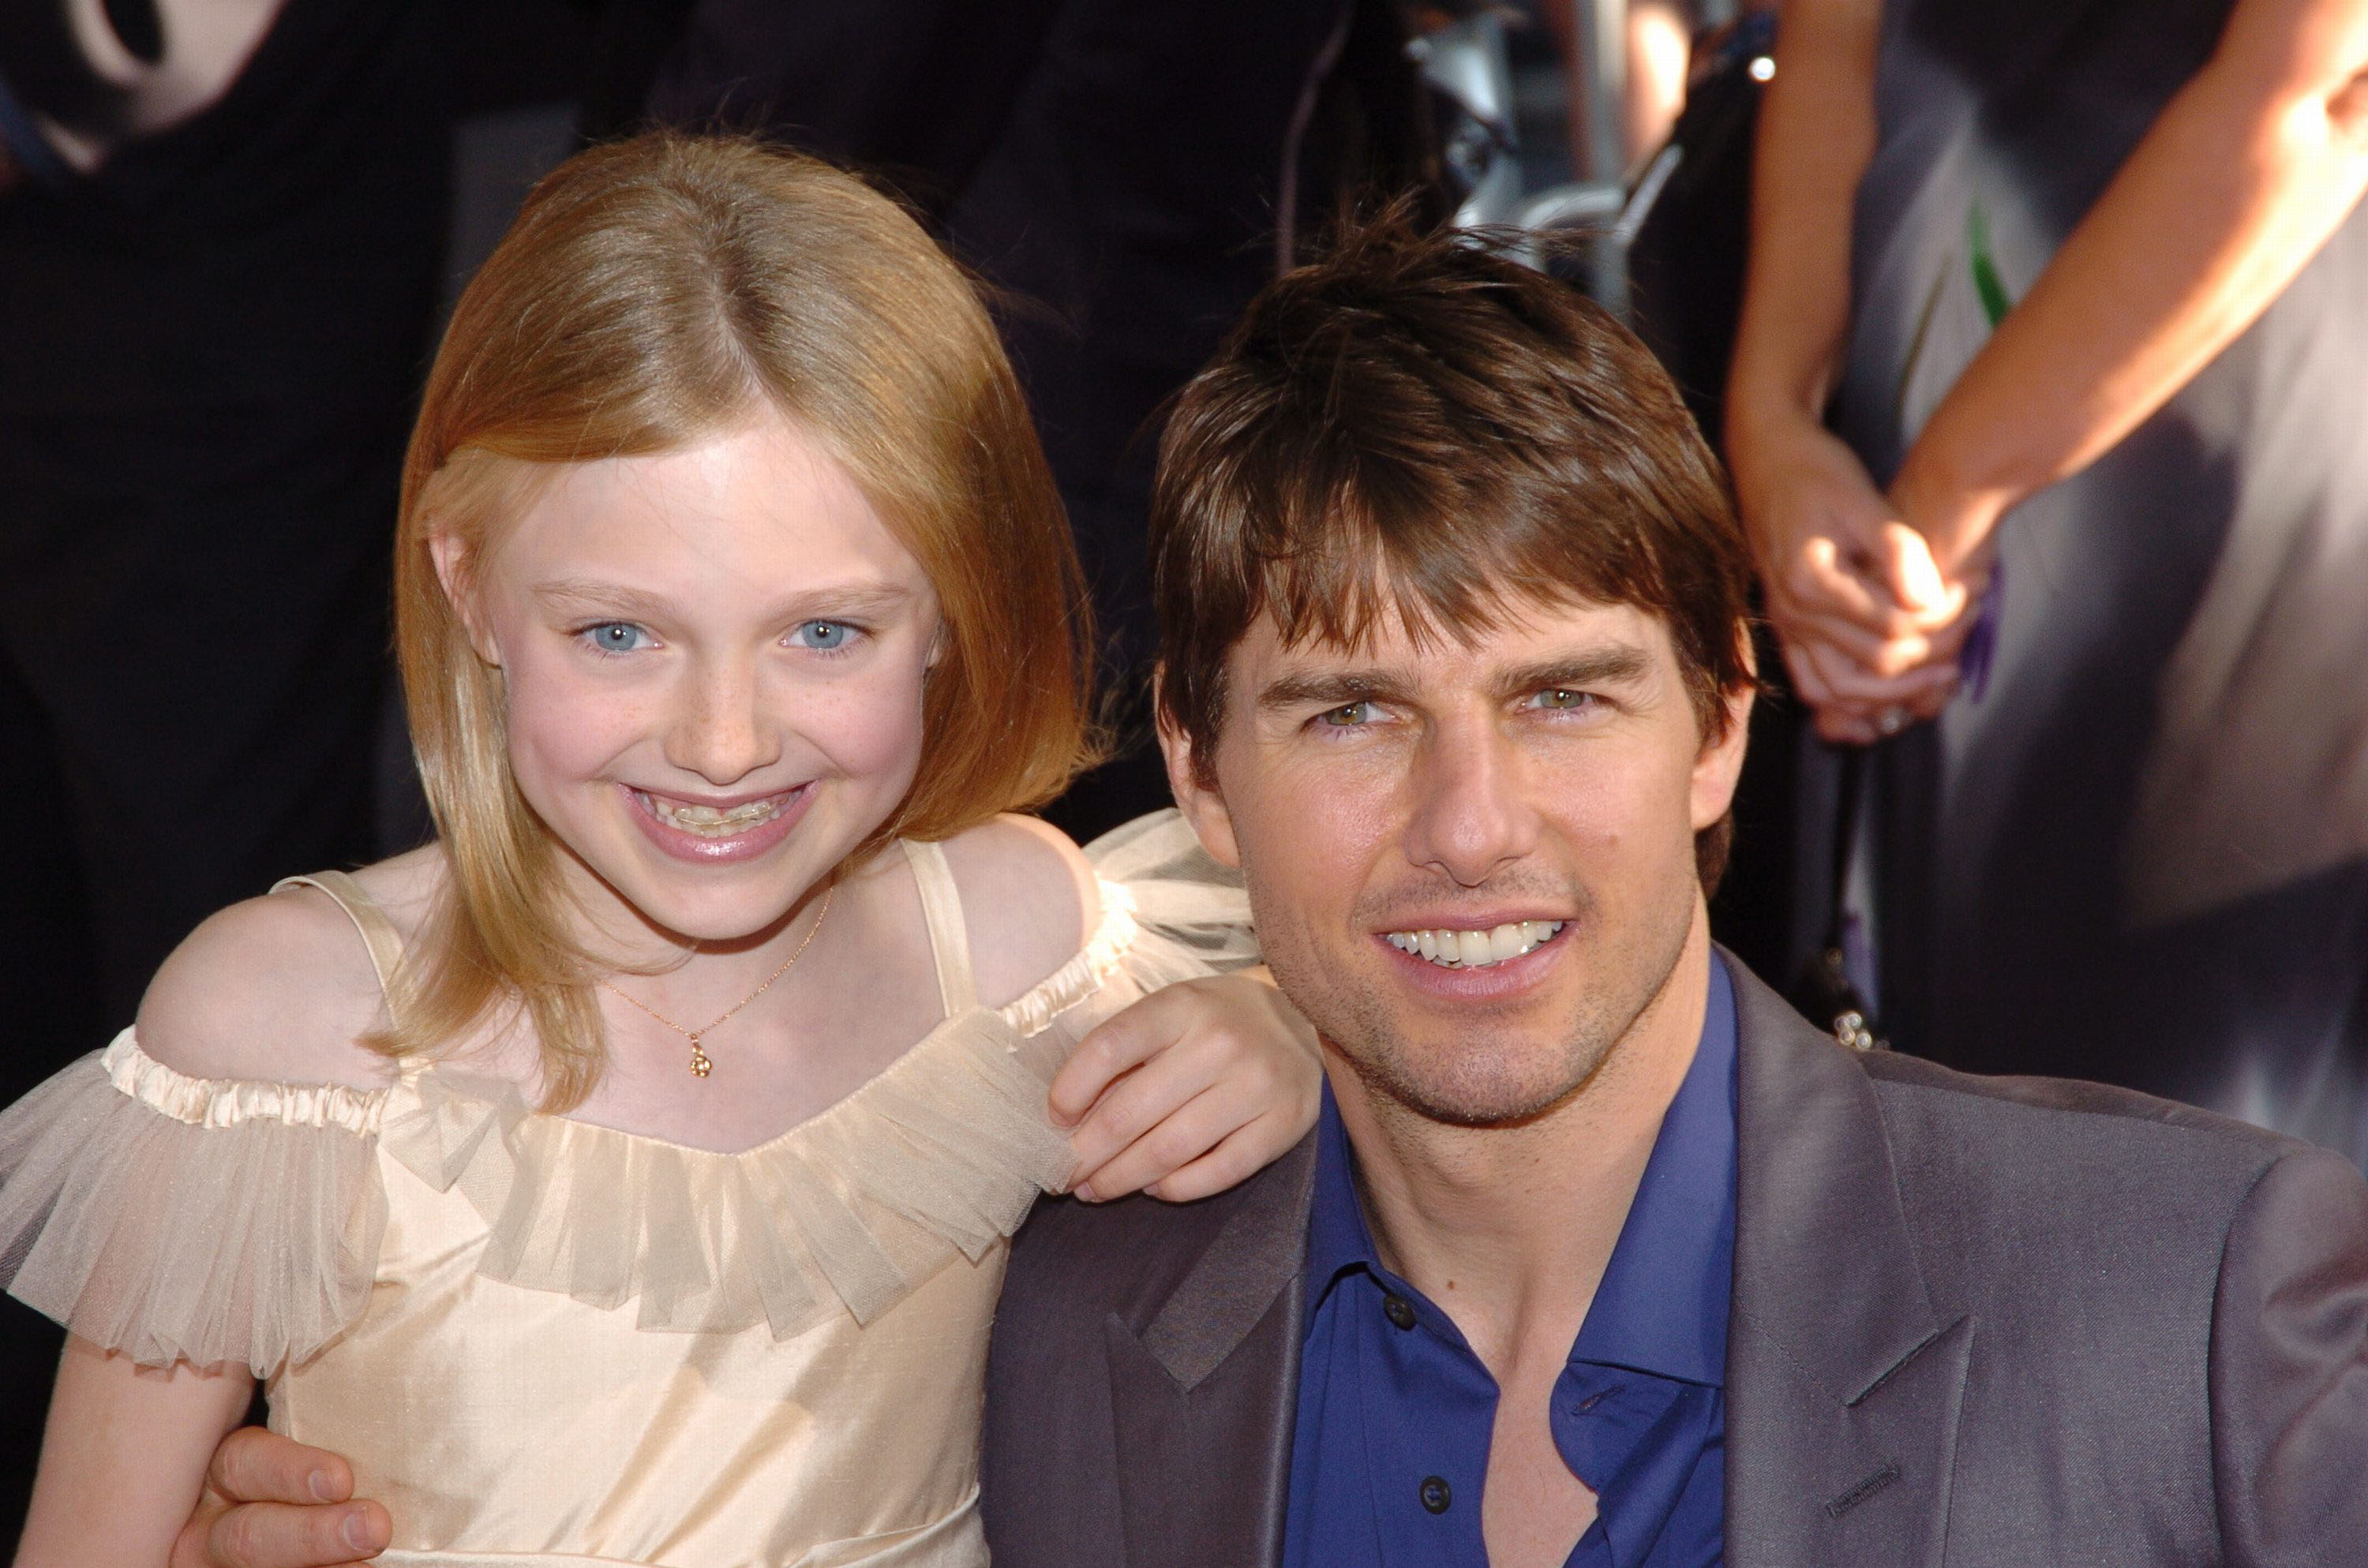 Tom Cruise y Dakota Fanning asisten al estreno de "War of the Worlds" el 23 de junio de 2005 en Nueva York | Foto: Getty Images